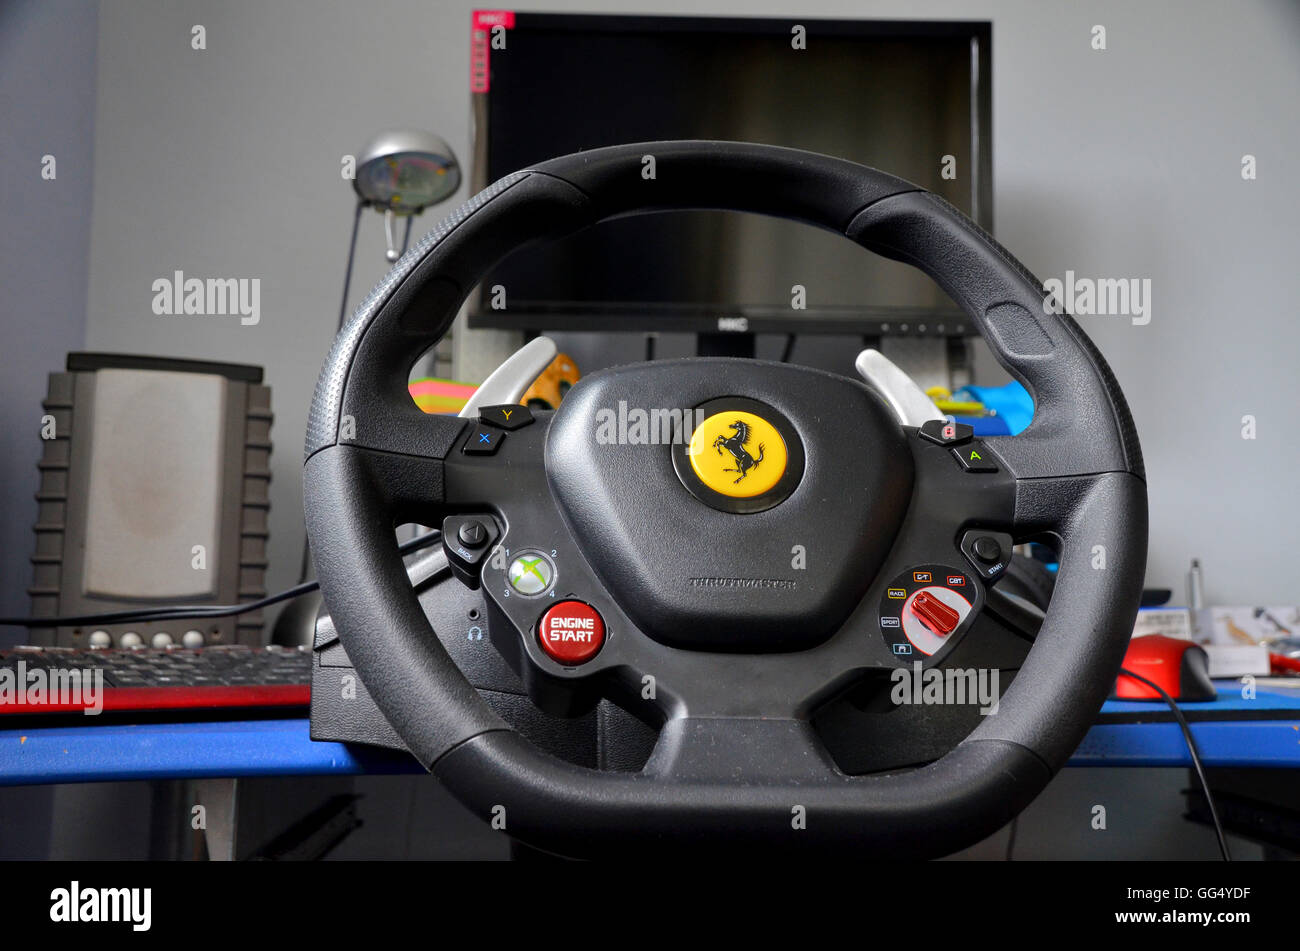 Simulación de carreras, volante para juegos y dispositivos para